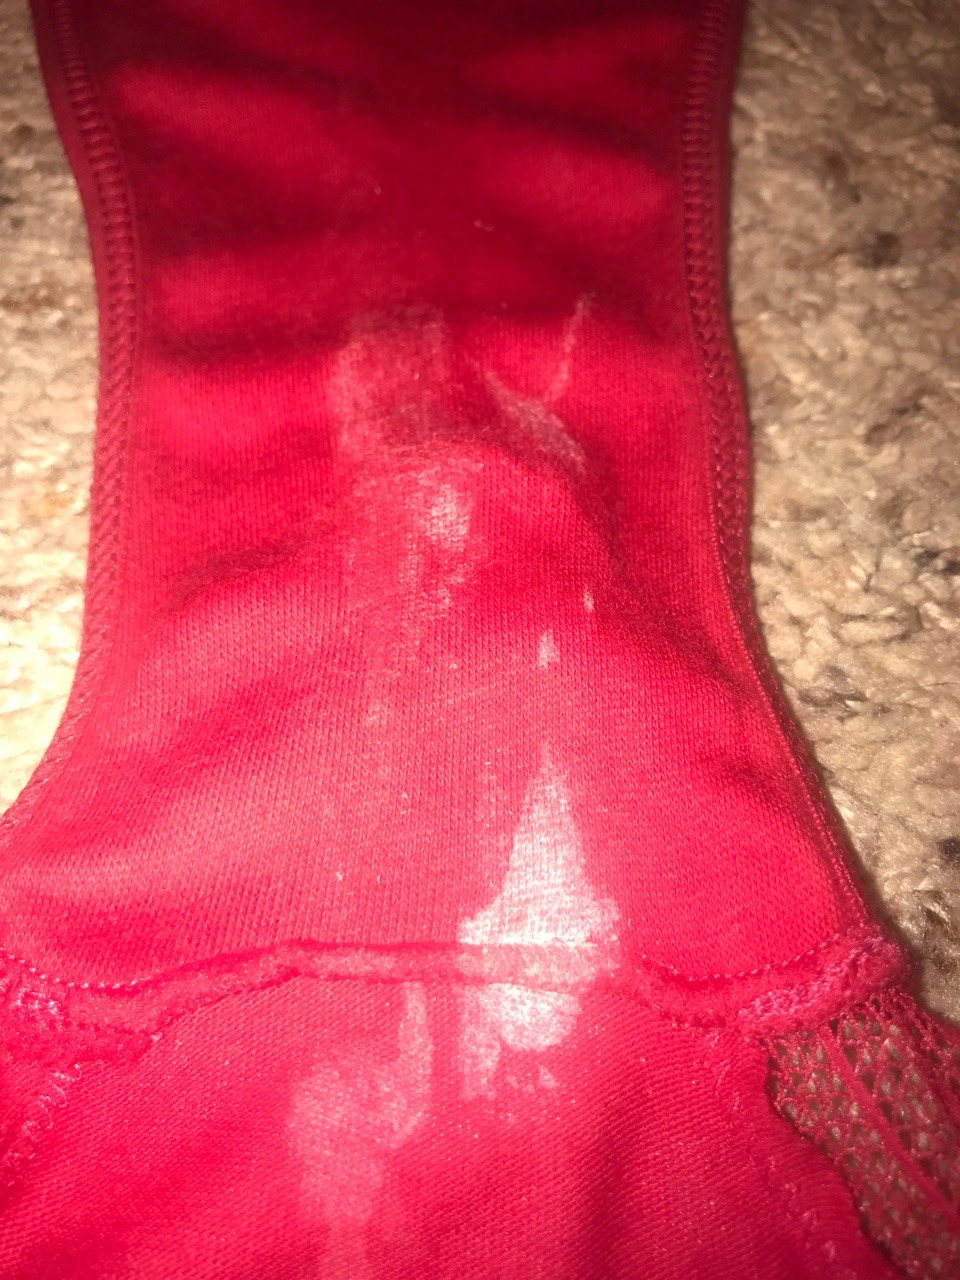 Tumblr dirty pads in panties